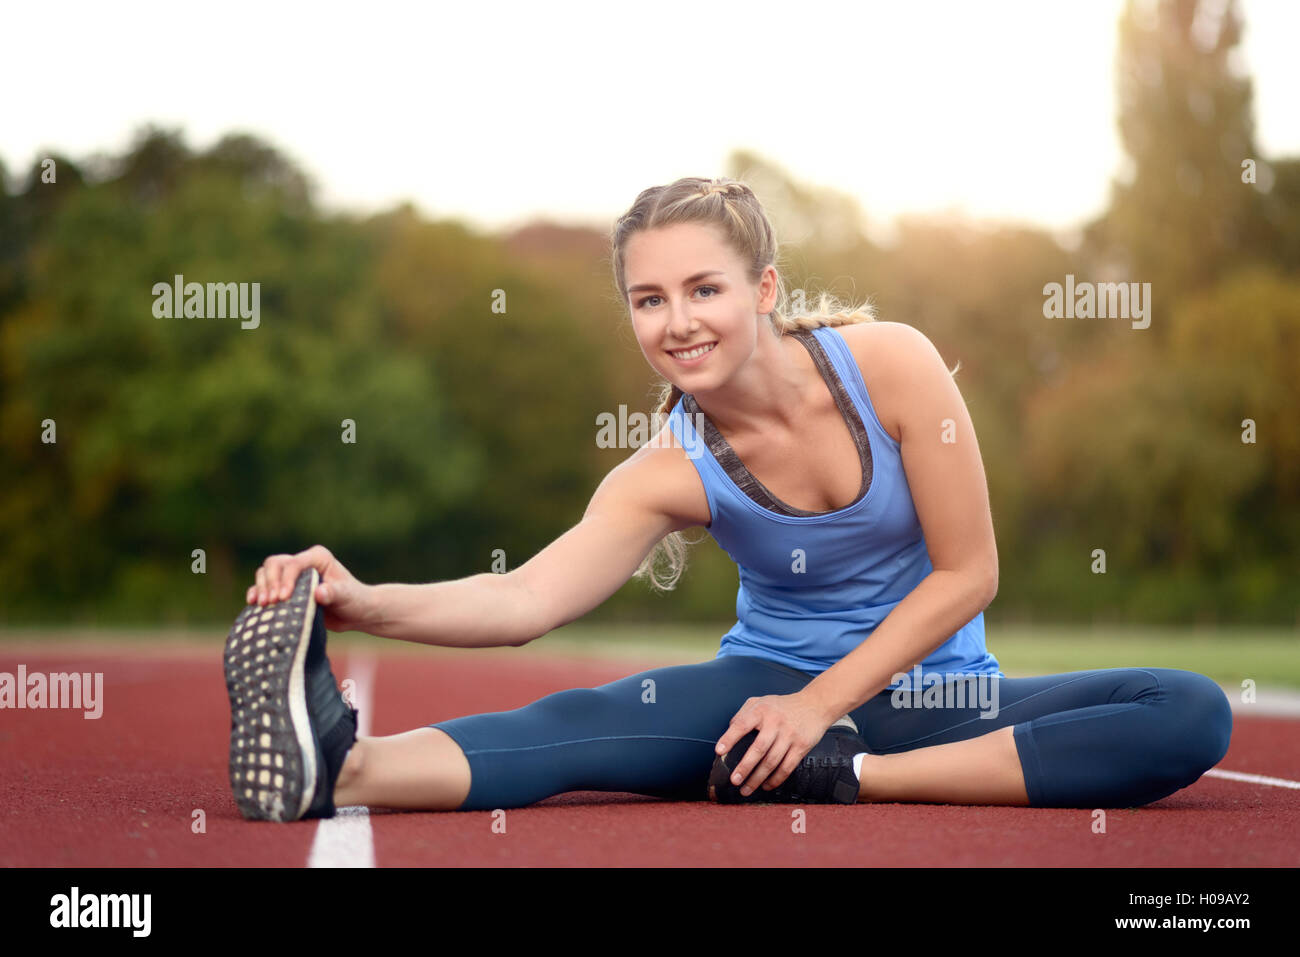 Glücklich Fit junge Frau tun stretching Übungen wie sie sitzt auf einer Leichtathletikbahn Aufwärmen vor dem Training in ein Gesundheits- und f Stockfoto